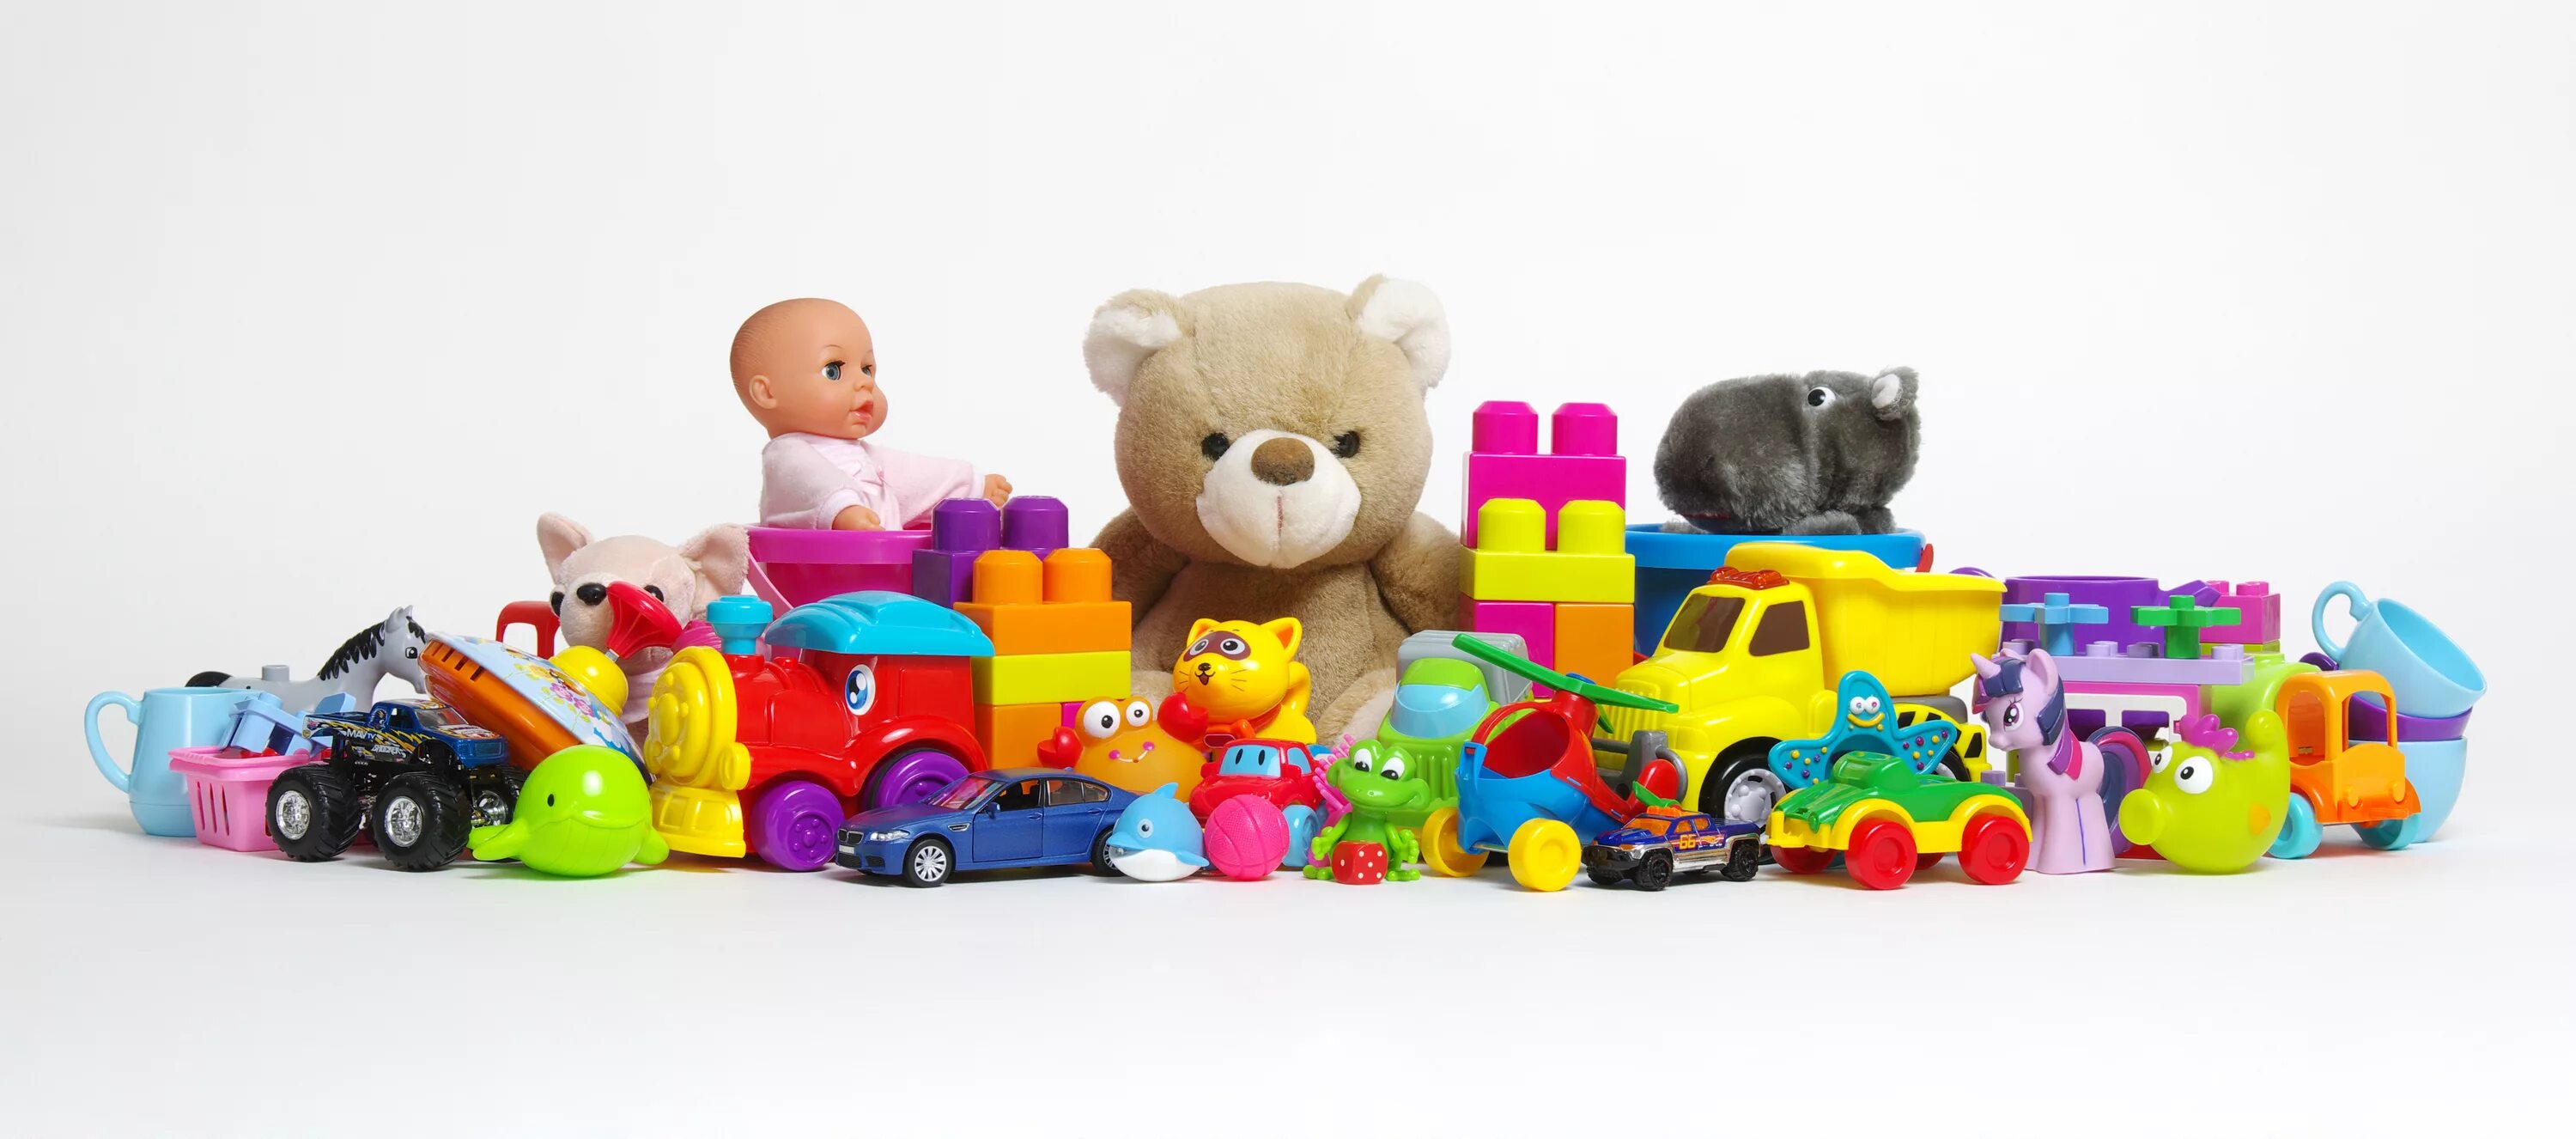 Много игрушек. Разные игрушки для детей. Мелкие игрушки для детей. Много игрушек для детей. Игрушки купить рядом